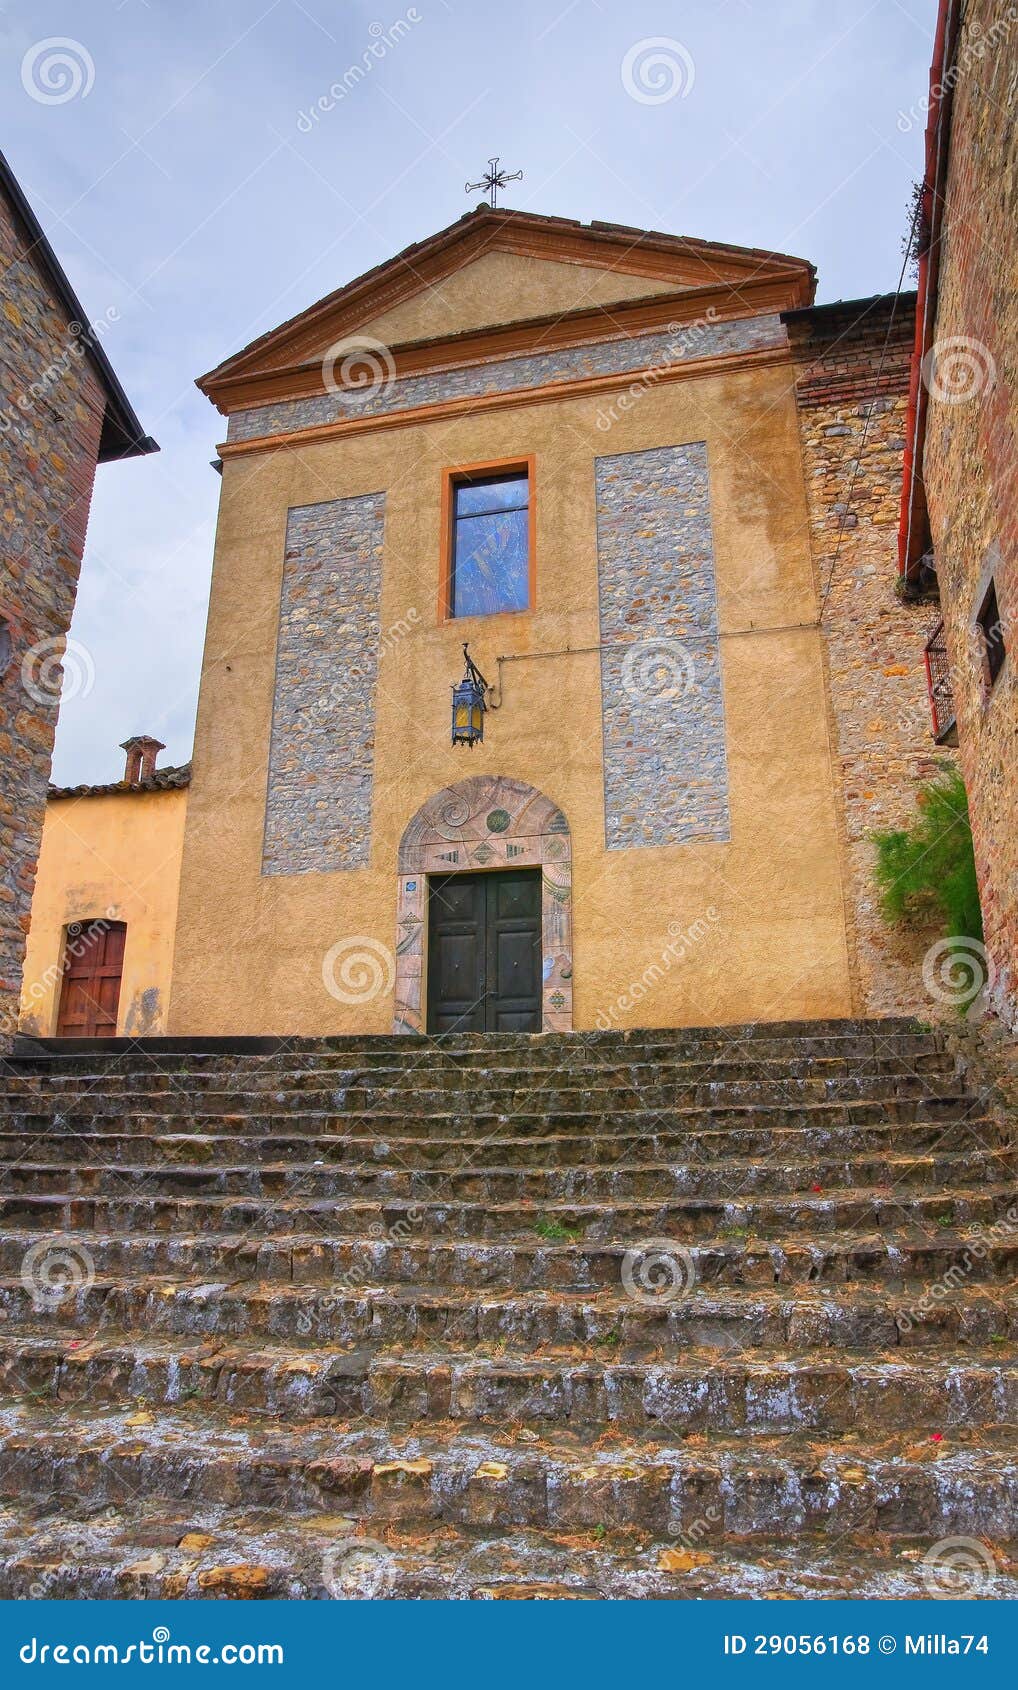 church of st. silvestro. salsomaggiore. emilia-romagna. italy.